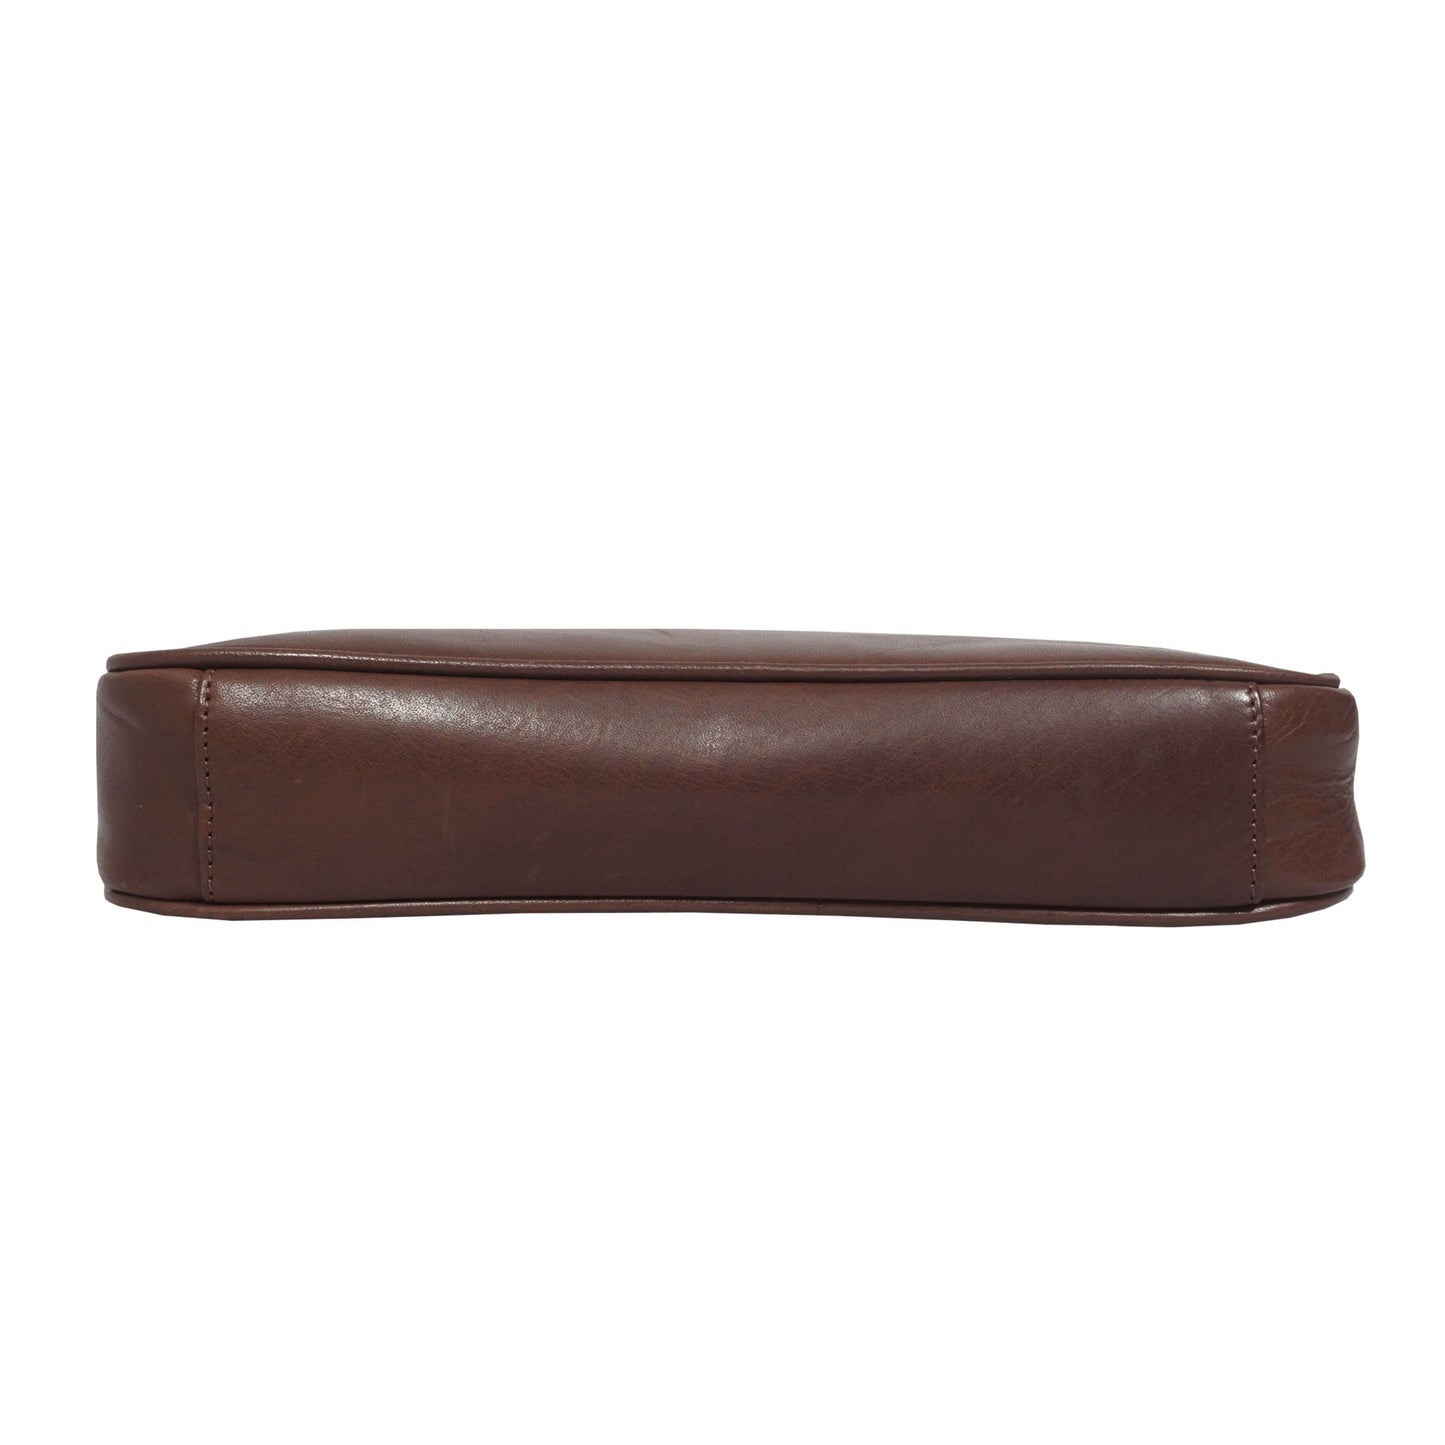 'ZARA' Brown Smooth Real Leather Baguette Shoulder Bag